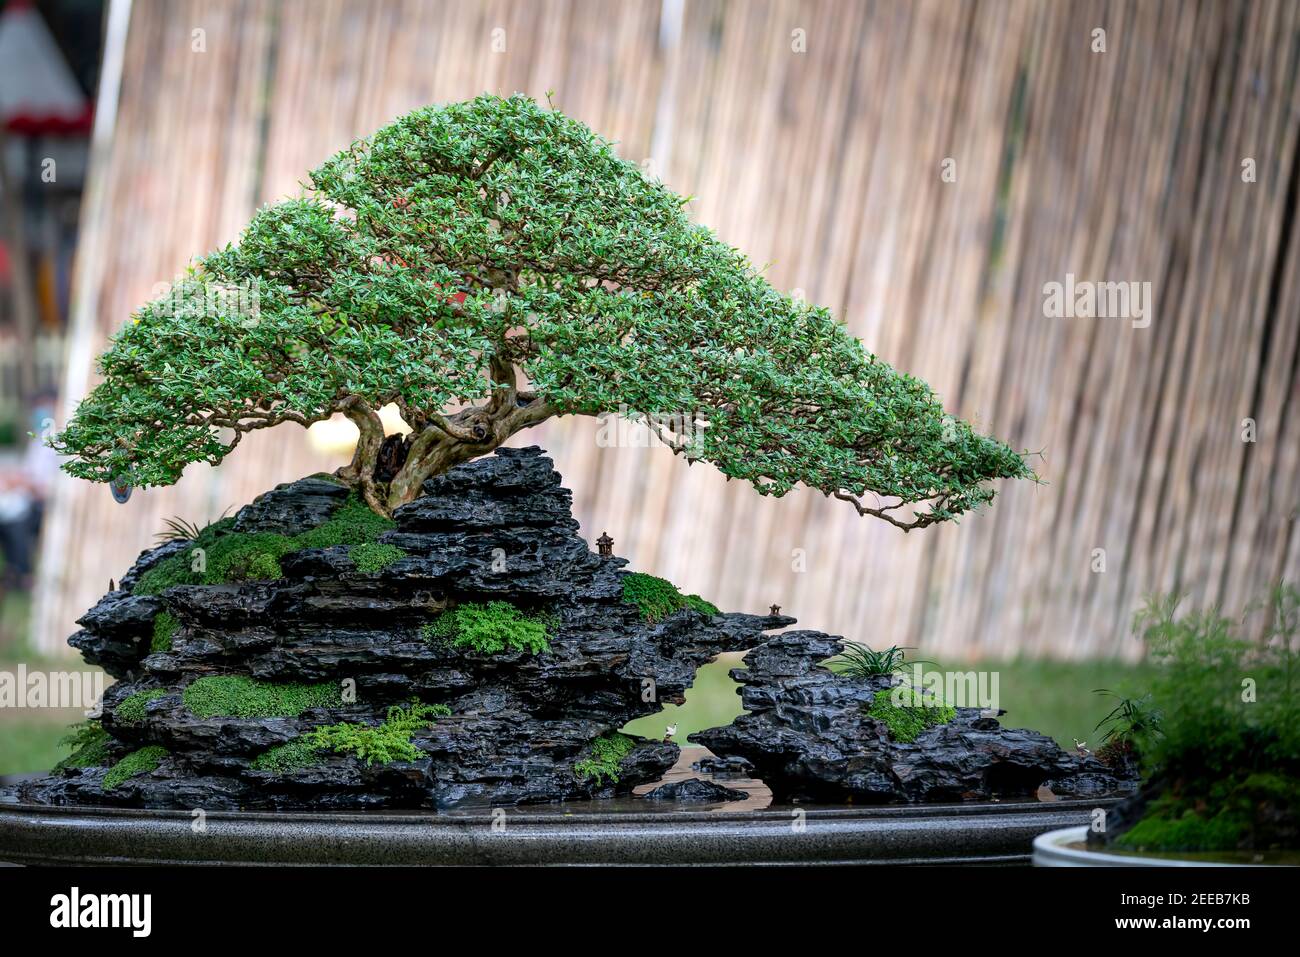 Vasi bonsai: storia, materiali, abbinamenti ed estetica